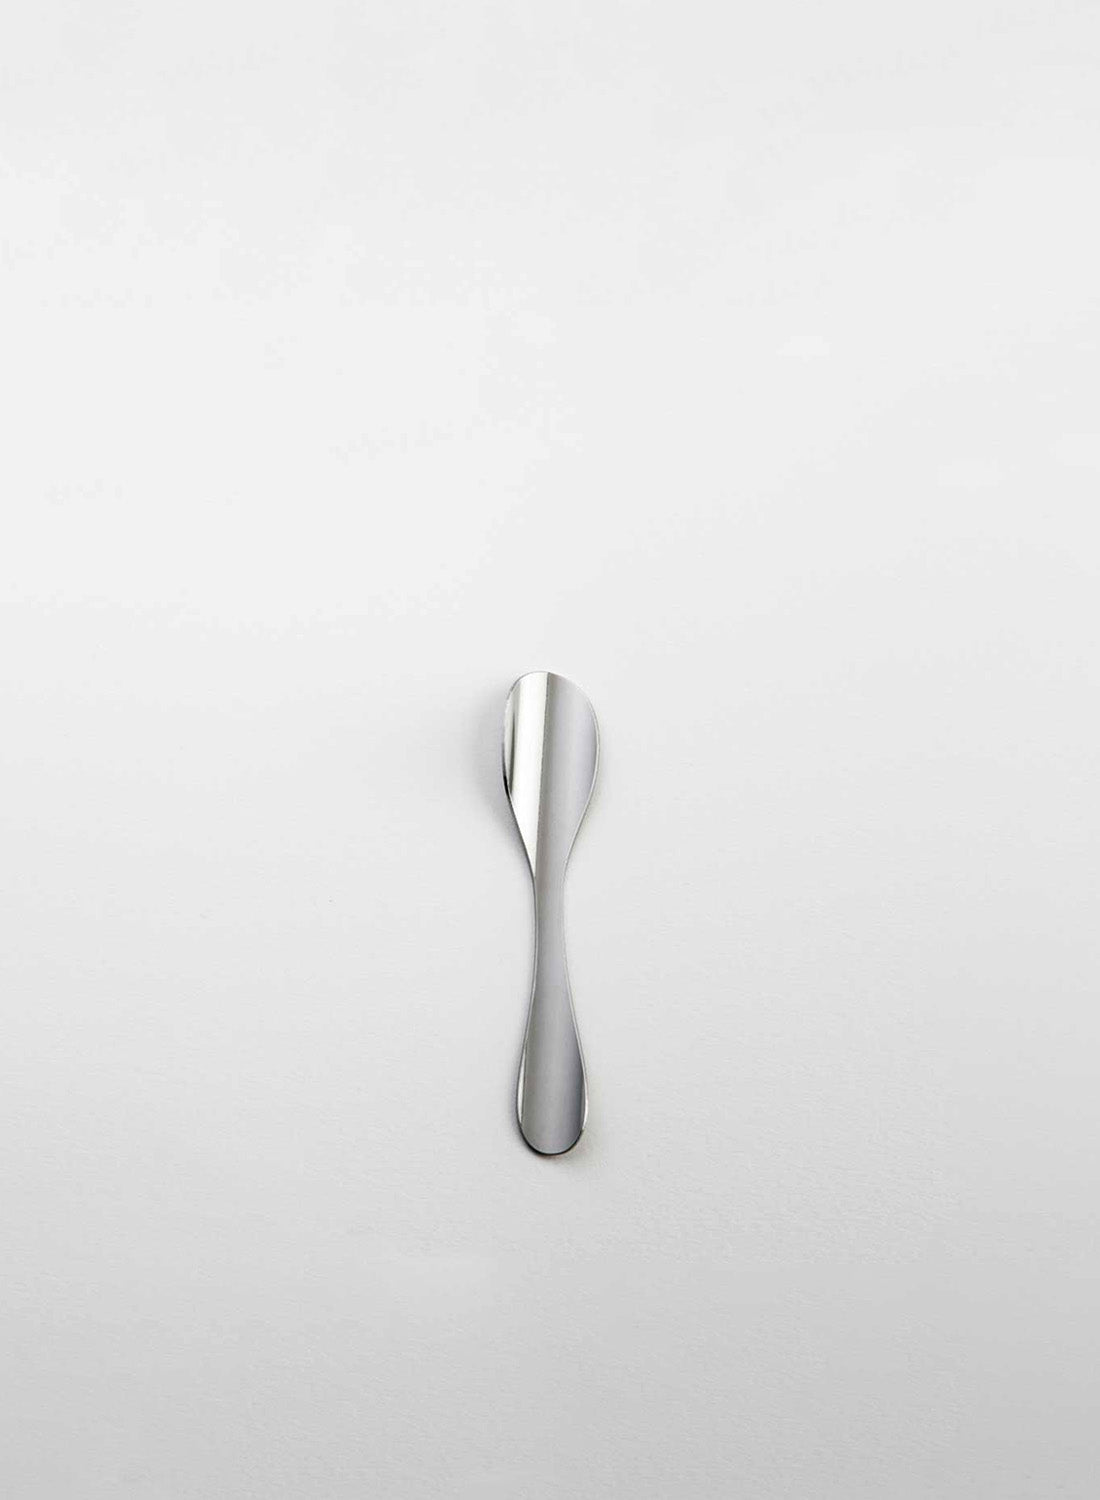 Maarten Baptist Tube Cutlery Coffee Spoon